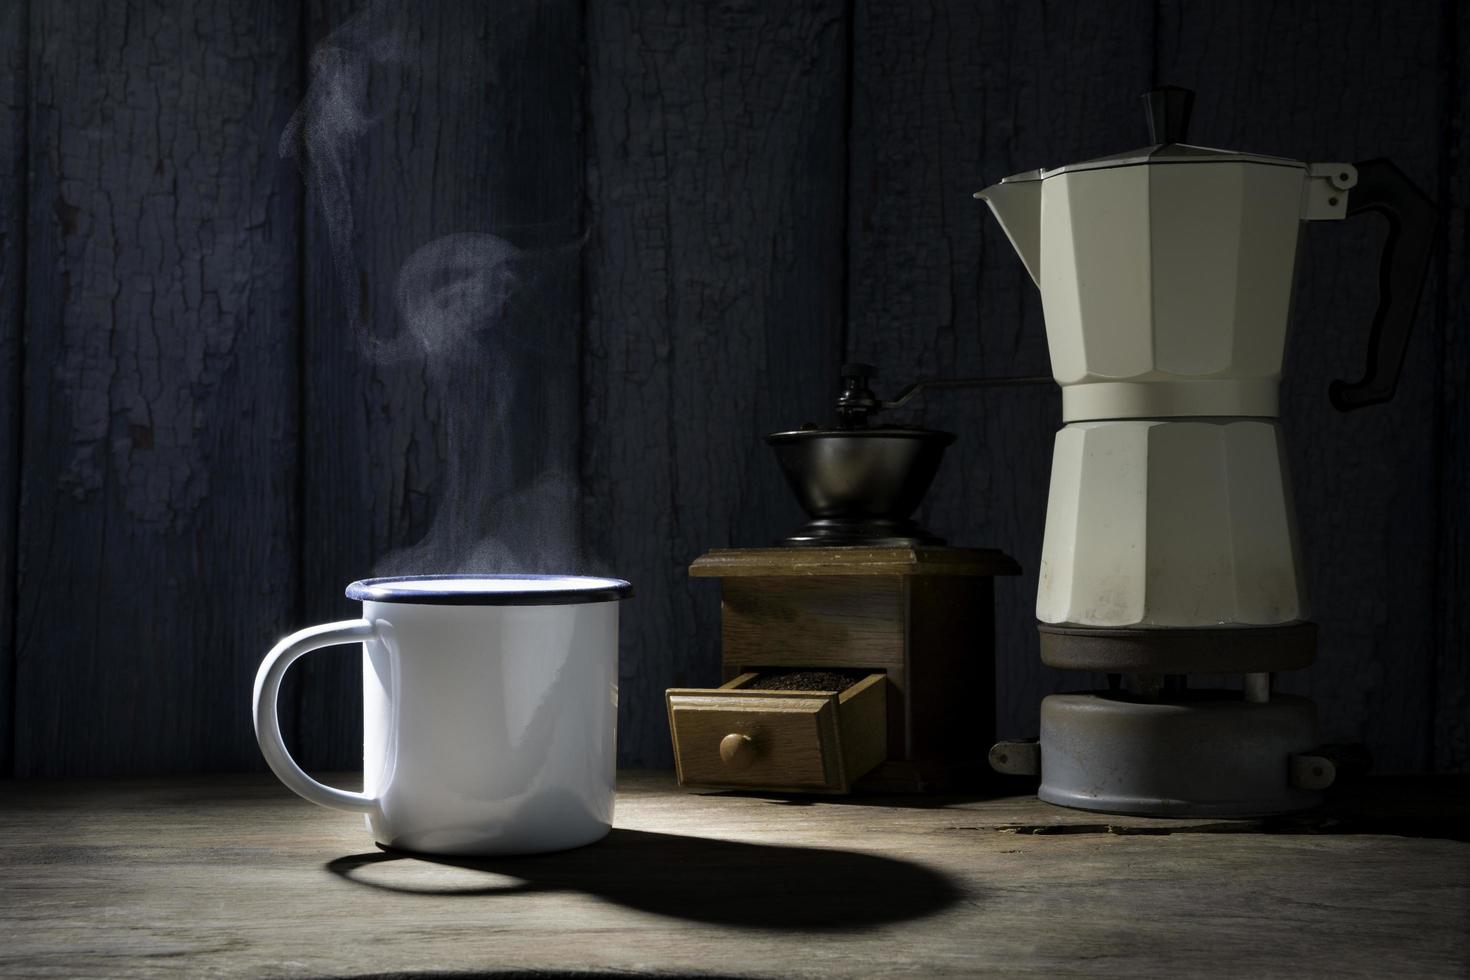 taza de café esmaltada con humo. juego de café con cafetera moka y molinillo en el viejo piso de madera. enfoque suave. foto